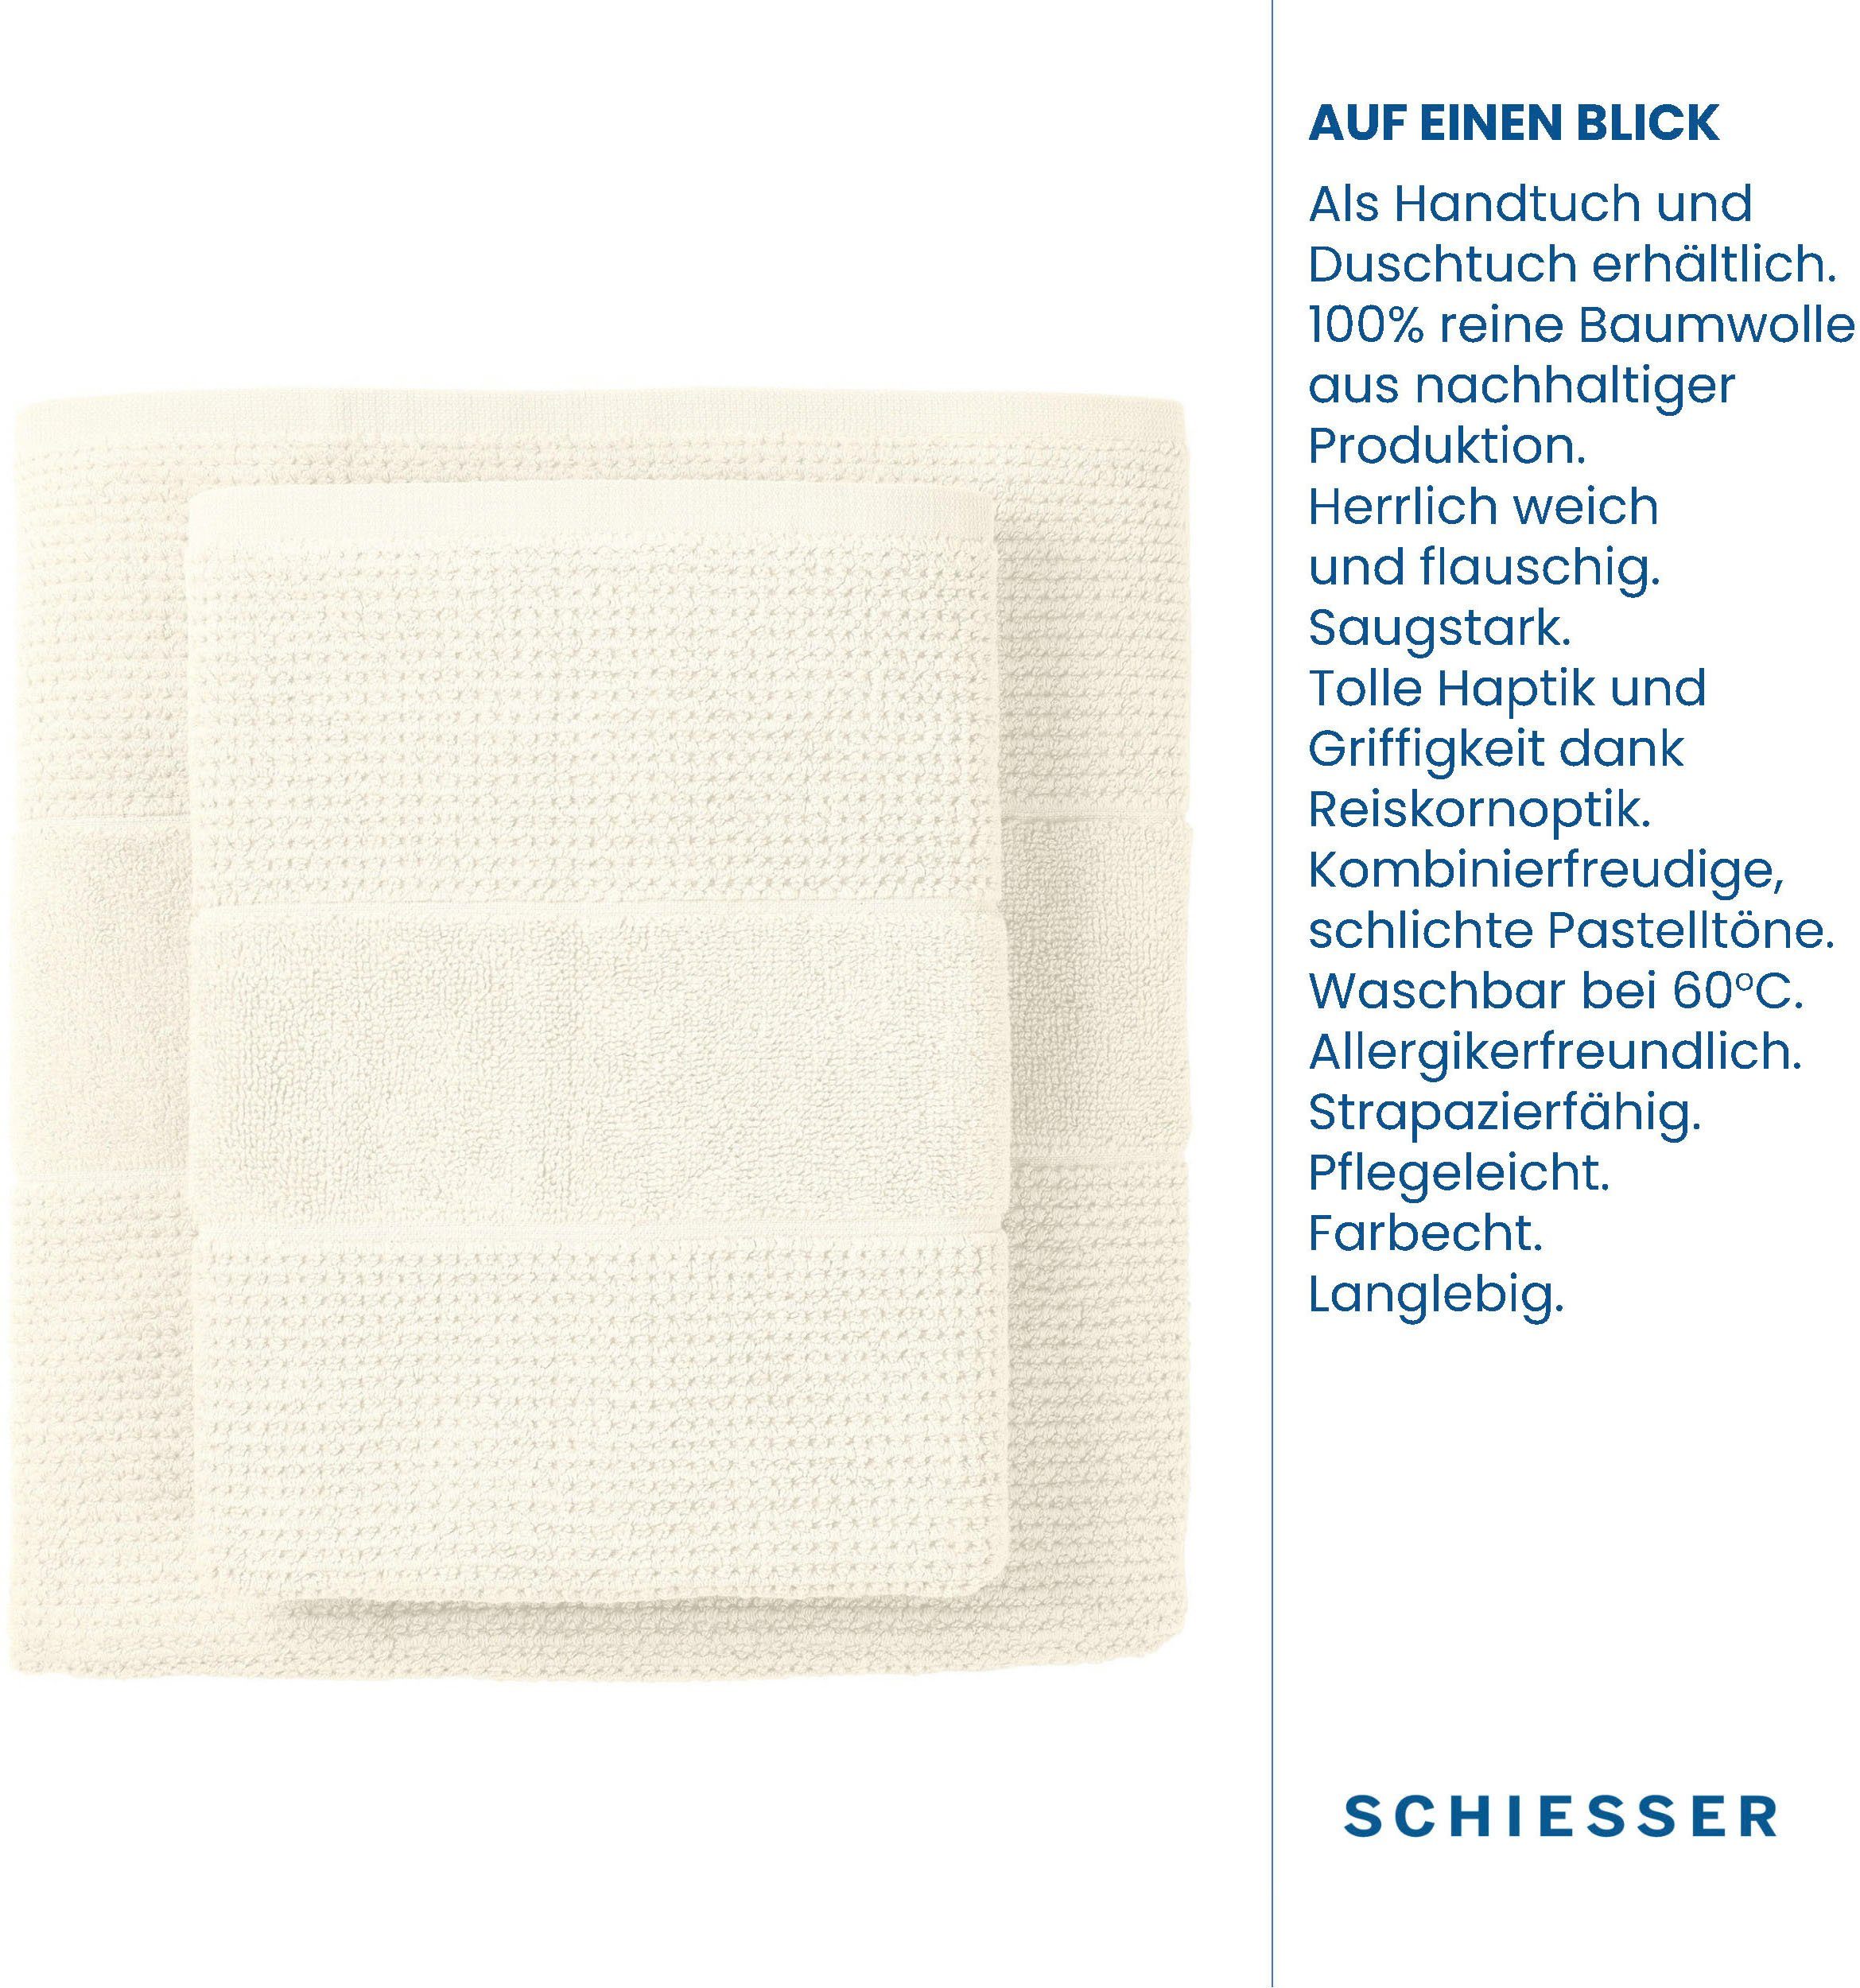 Schiesser Handtücher 4er OEKO-TEX®-zertifiziert by IN Reiskorn-Optik, 100% im GREEN Offwhite Baumwolle, Frottier Turin aus Set (4-St), MADE